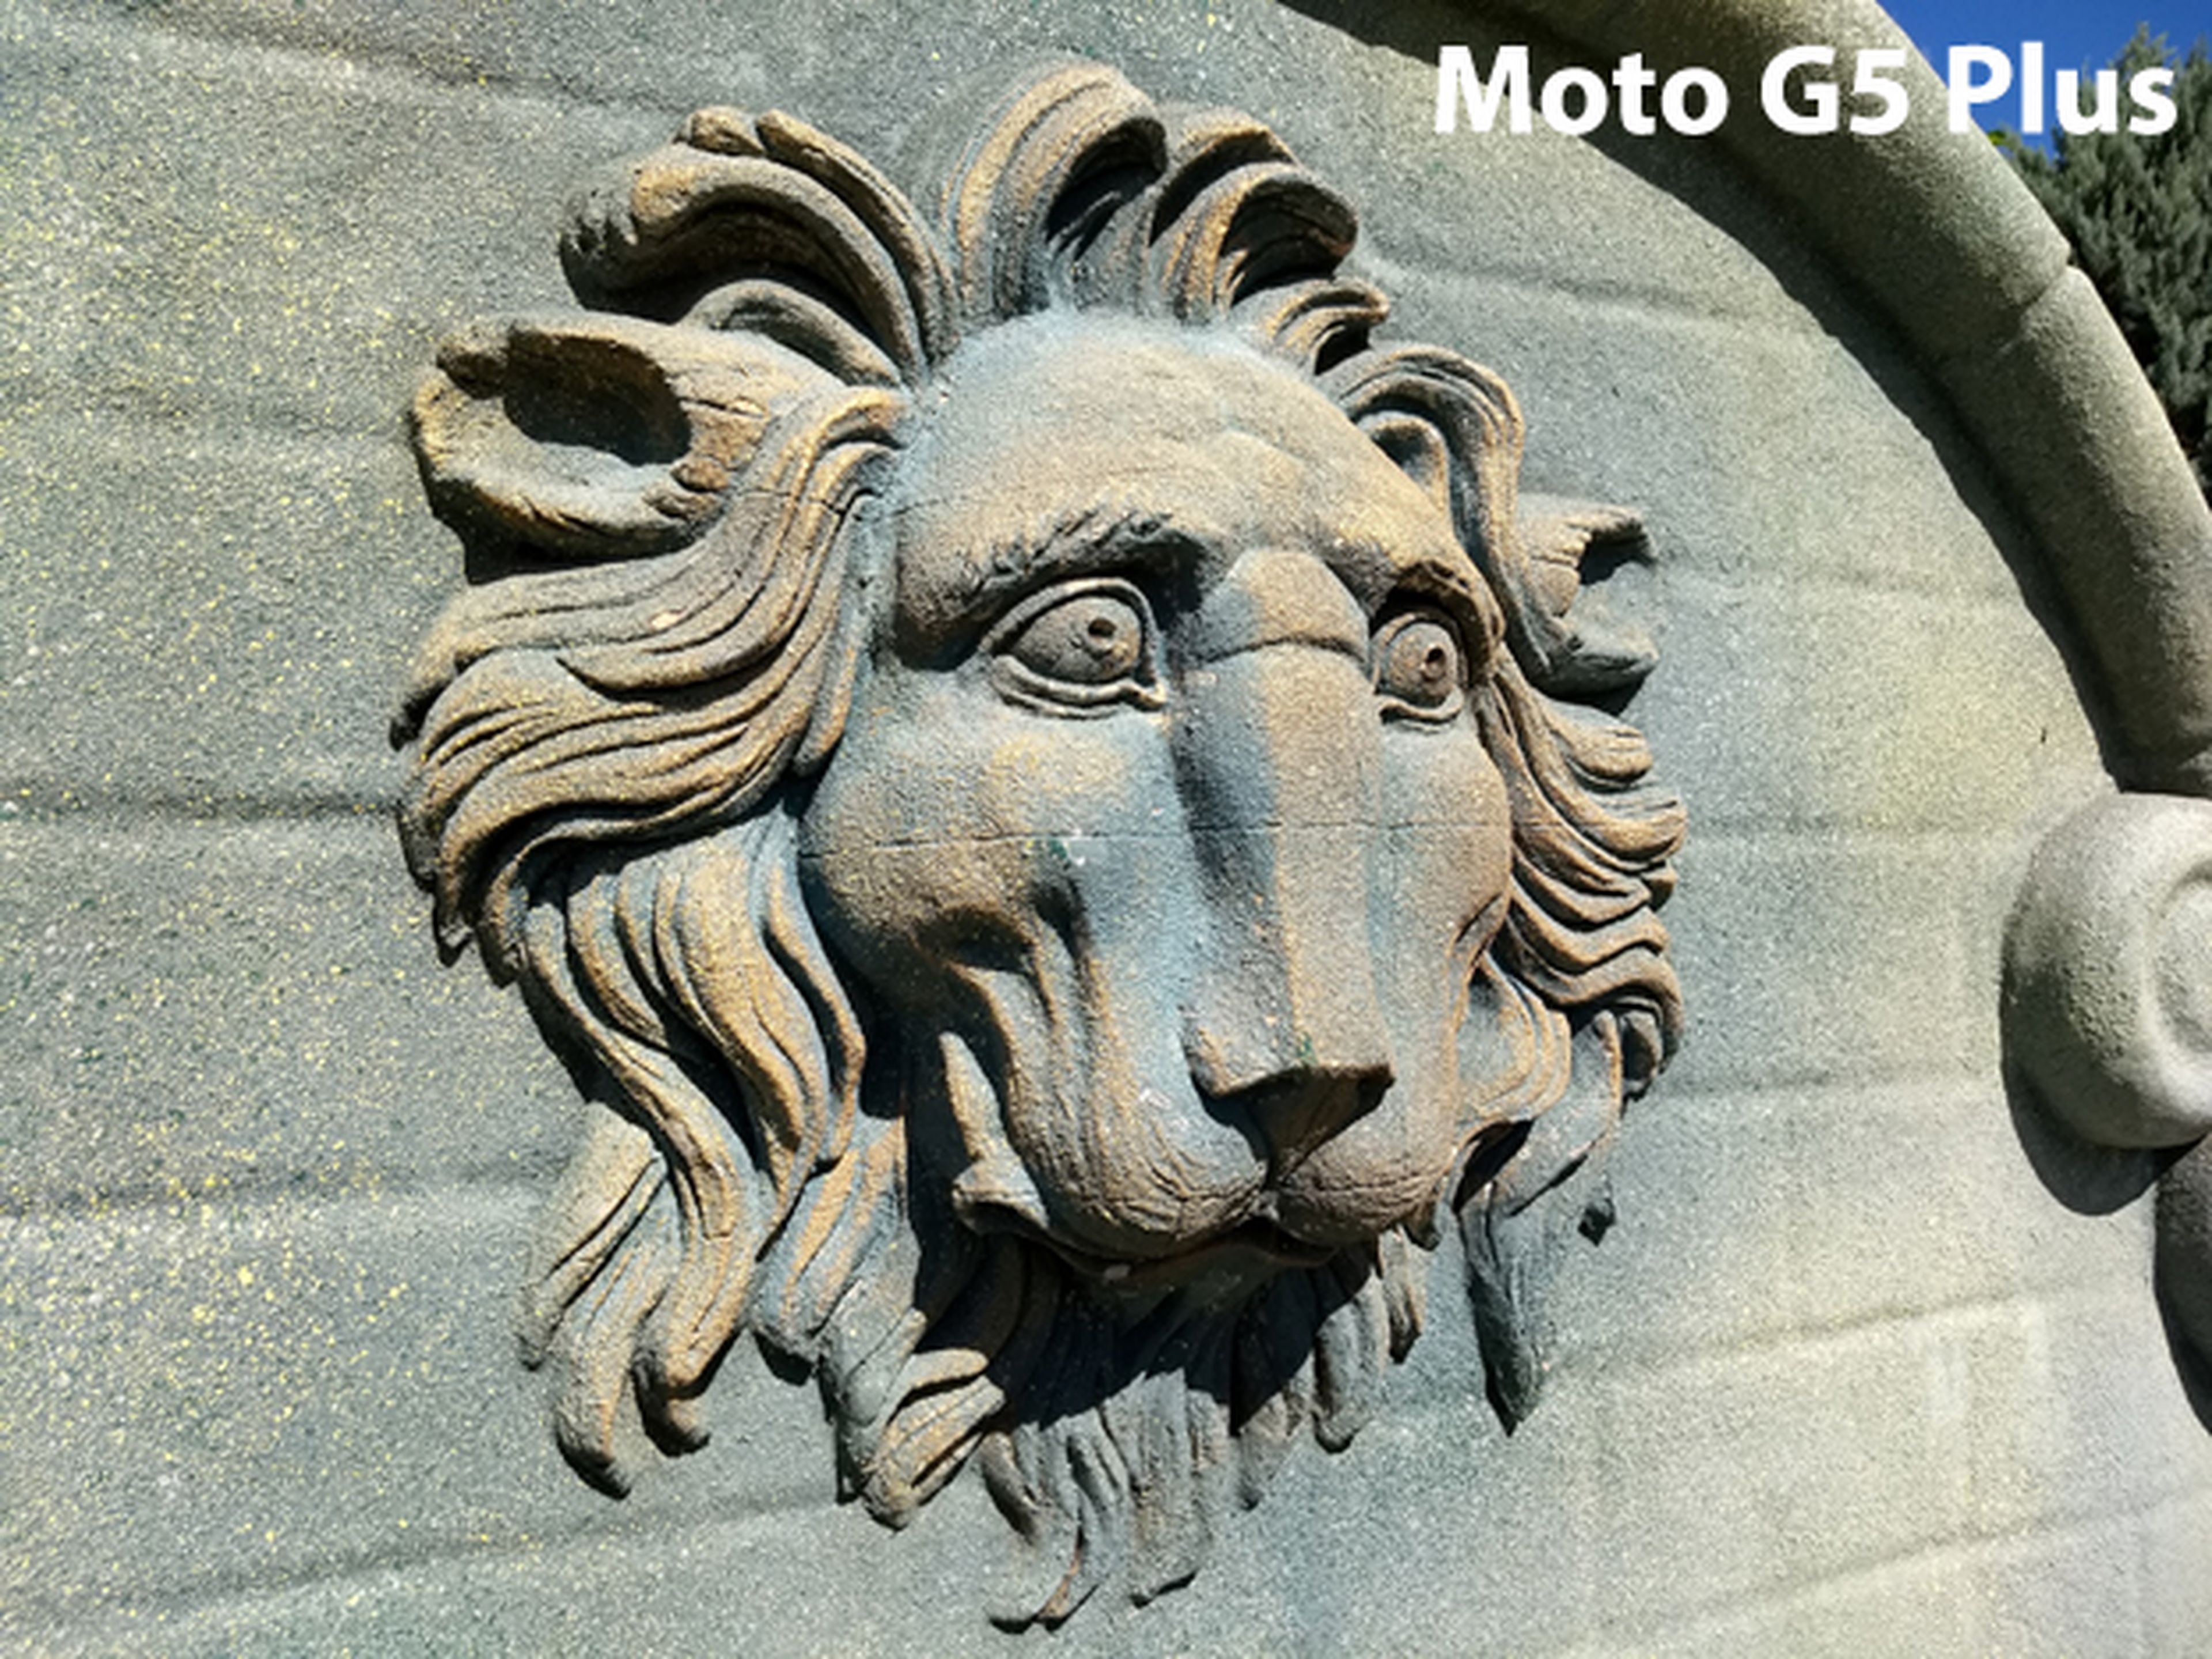 Moto G5 frente al Moto G5 Plus: comparativa con análisis